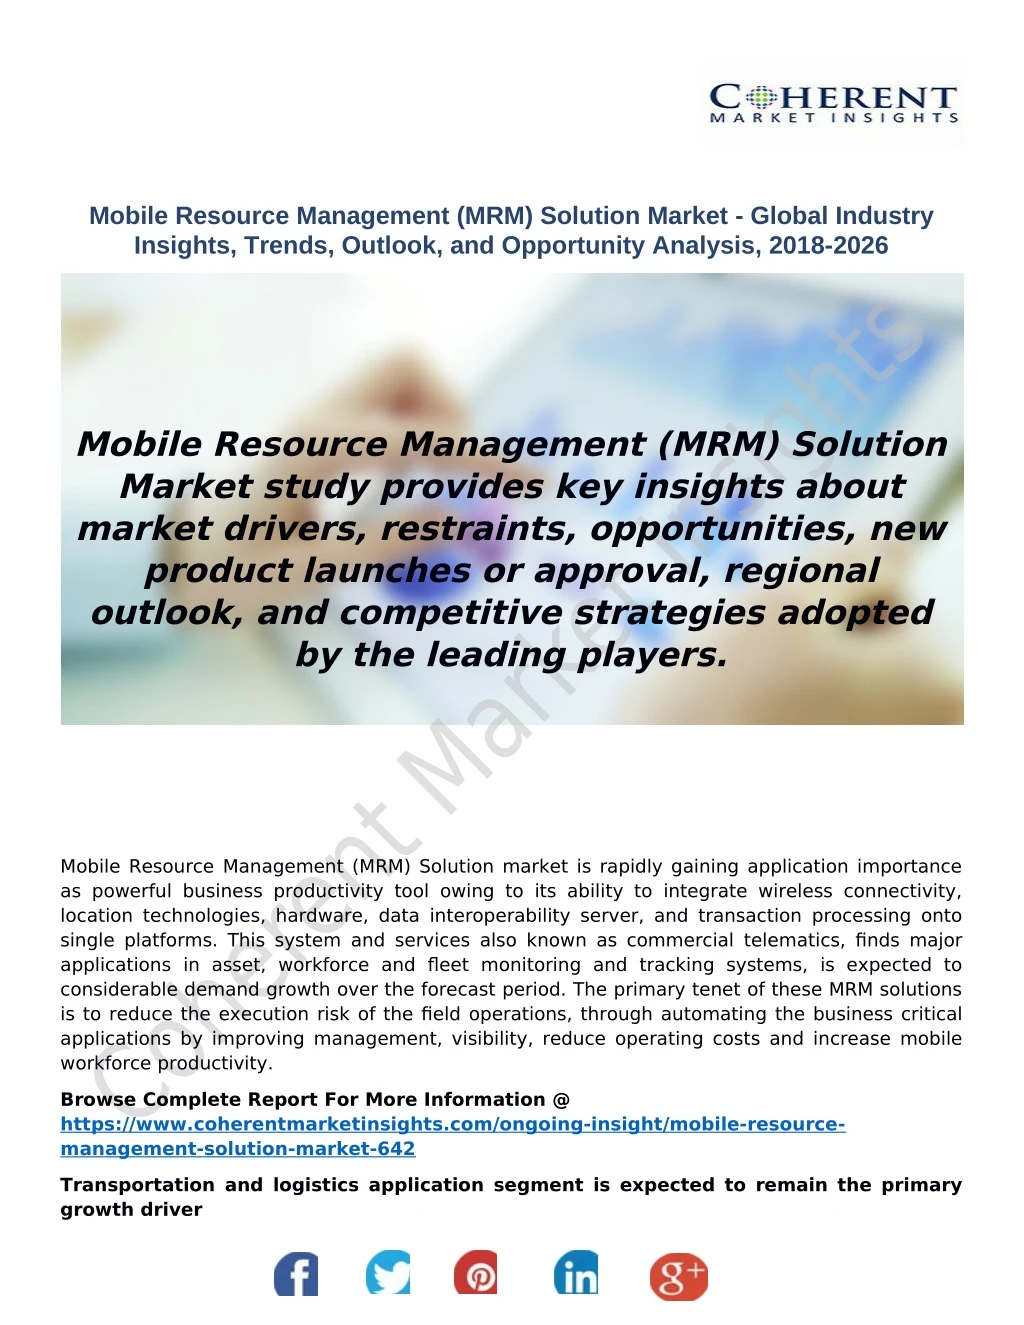 mobile resource management mrm solution market